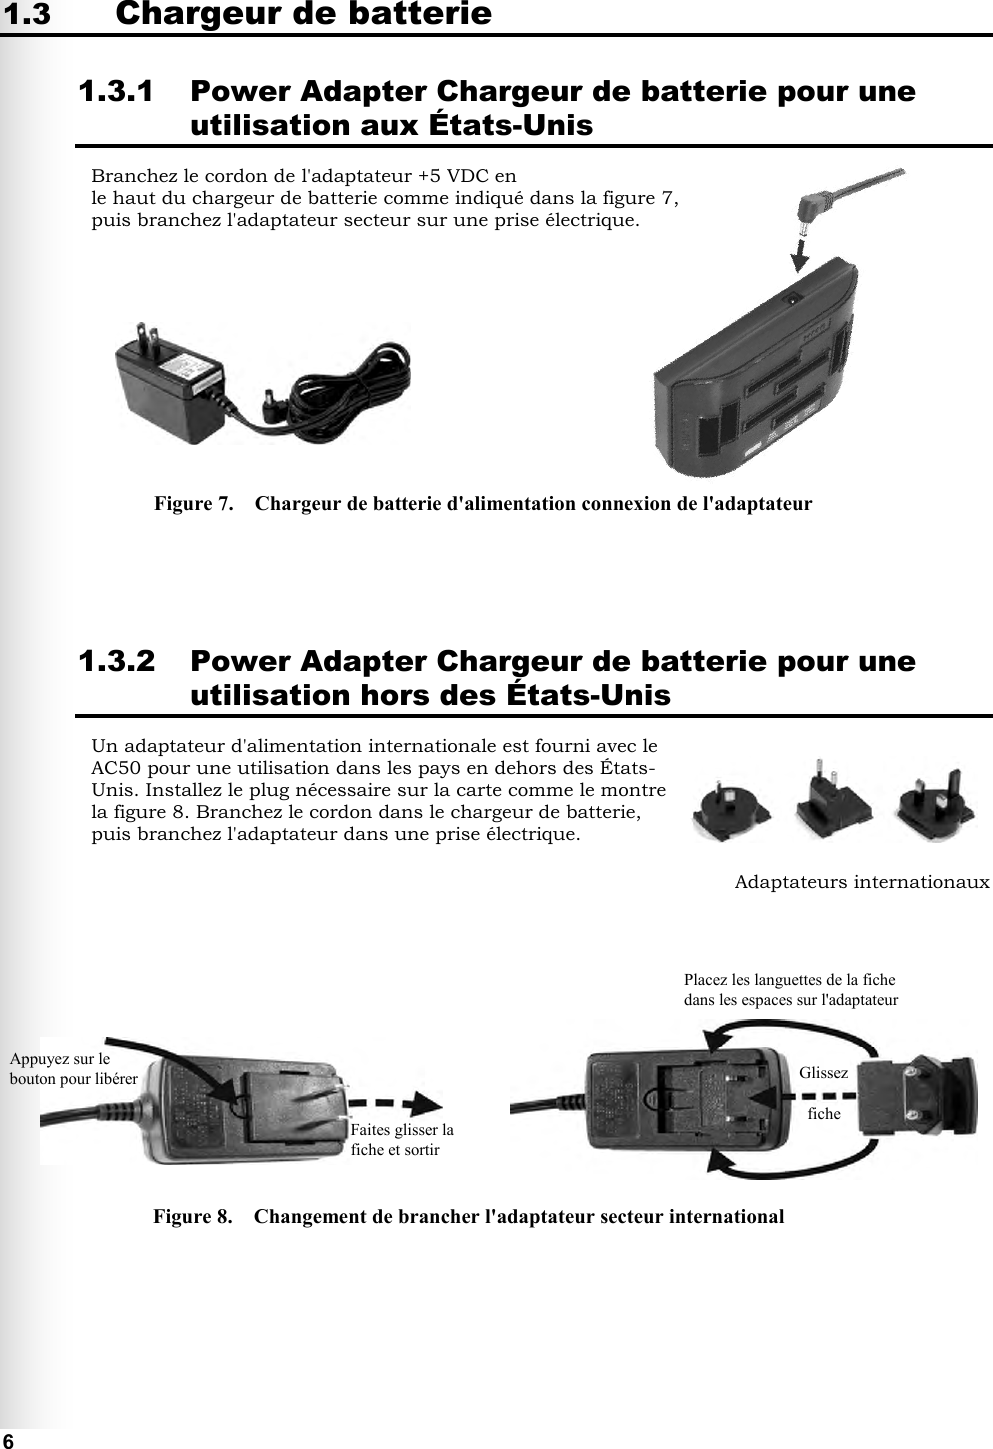   6 1.3 Chargeur de batterie 1.3.1 Power Adapter Chargeur de batterie pour une utilisation aux États-Unis Branchez le cordon de l&apos;adaptateur +5 VDC en le haut du chargeur de batterie comme indiqué dans la figure 7, puis branchez l&apos;adaptateur secteur sur une prise électrique.               1.3.2 Power Adapter Chargeur de batterie pour une utilisation hors des États-Unis Un adaptateur d&apos;alimentation internationale est fourni avec le AC50 pour une utilisation dans les pays en dehors des États-Unis. Installez le plug nécessaire sur la carte comme le montre la figure 8. Branchez le cordon dans le chargeur de batterie, puis branchez l&apos;adaptateur dans une prise électrique.                Figure 7.    Chargeur de batterie d&apos;alimentation connexion de l&apos;adaptateur Figure 8.    Changement de brancher l&apos;adaptateur secteur international Adaptateurs internationaux Placez les languettes de la fiche dans les espaces sur l&apos;adaptateur Glissez  fiche  Faites glisser la fiche et sortir Appuyez sur le bouton pour libérer 